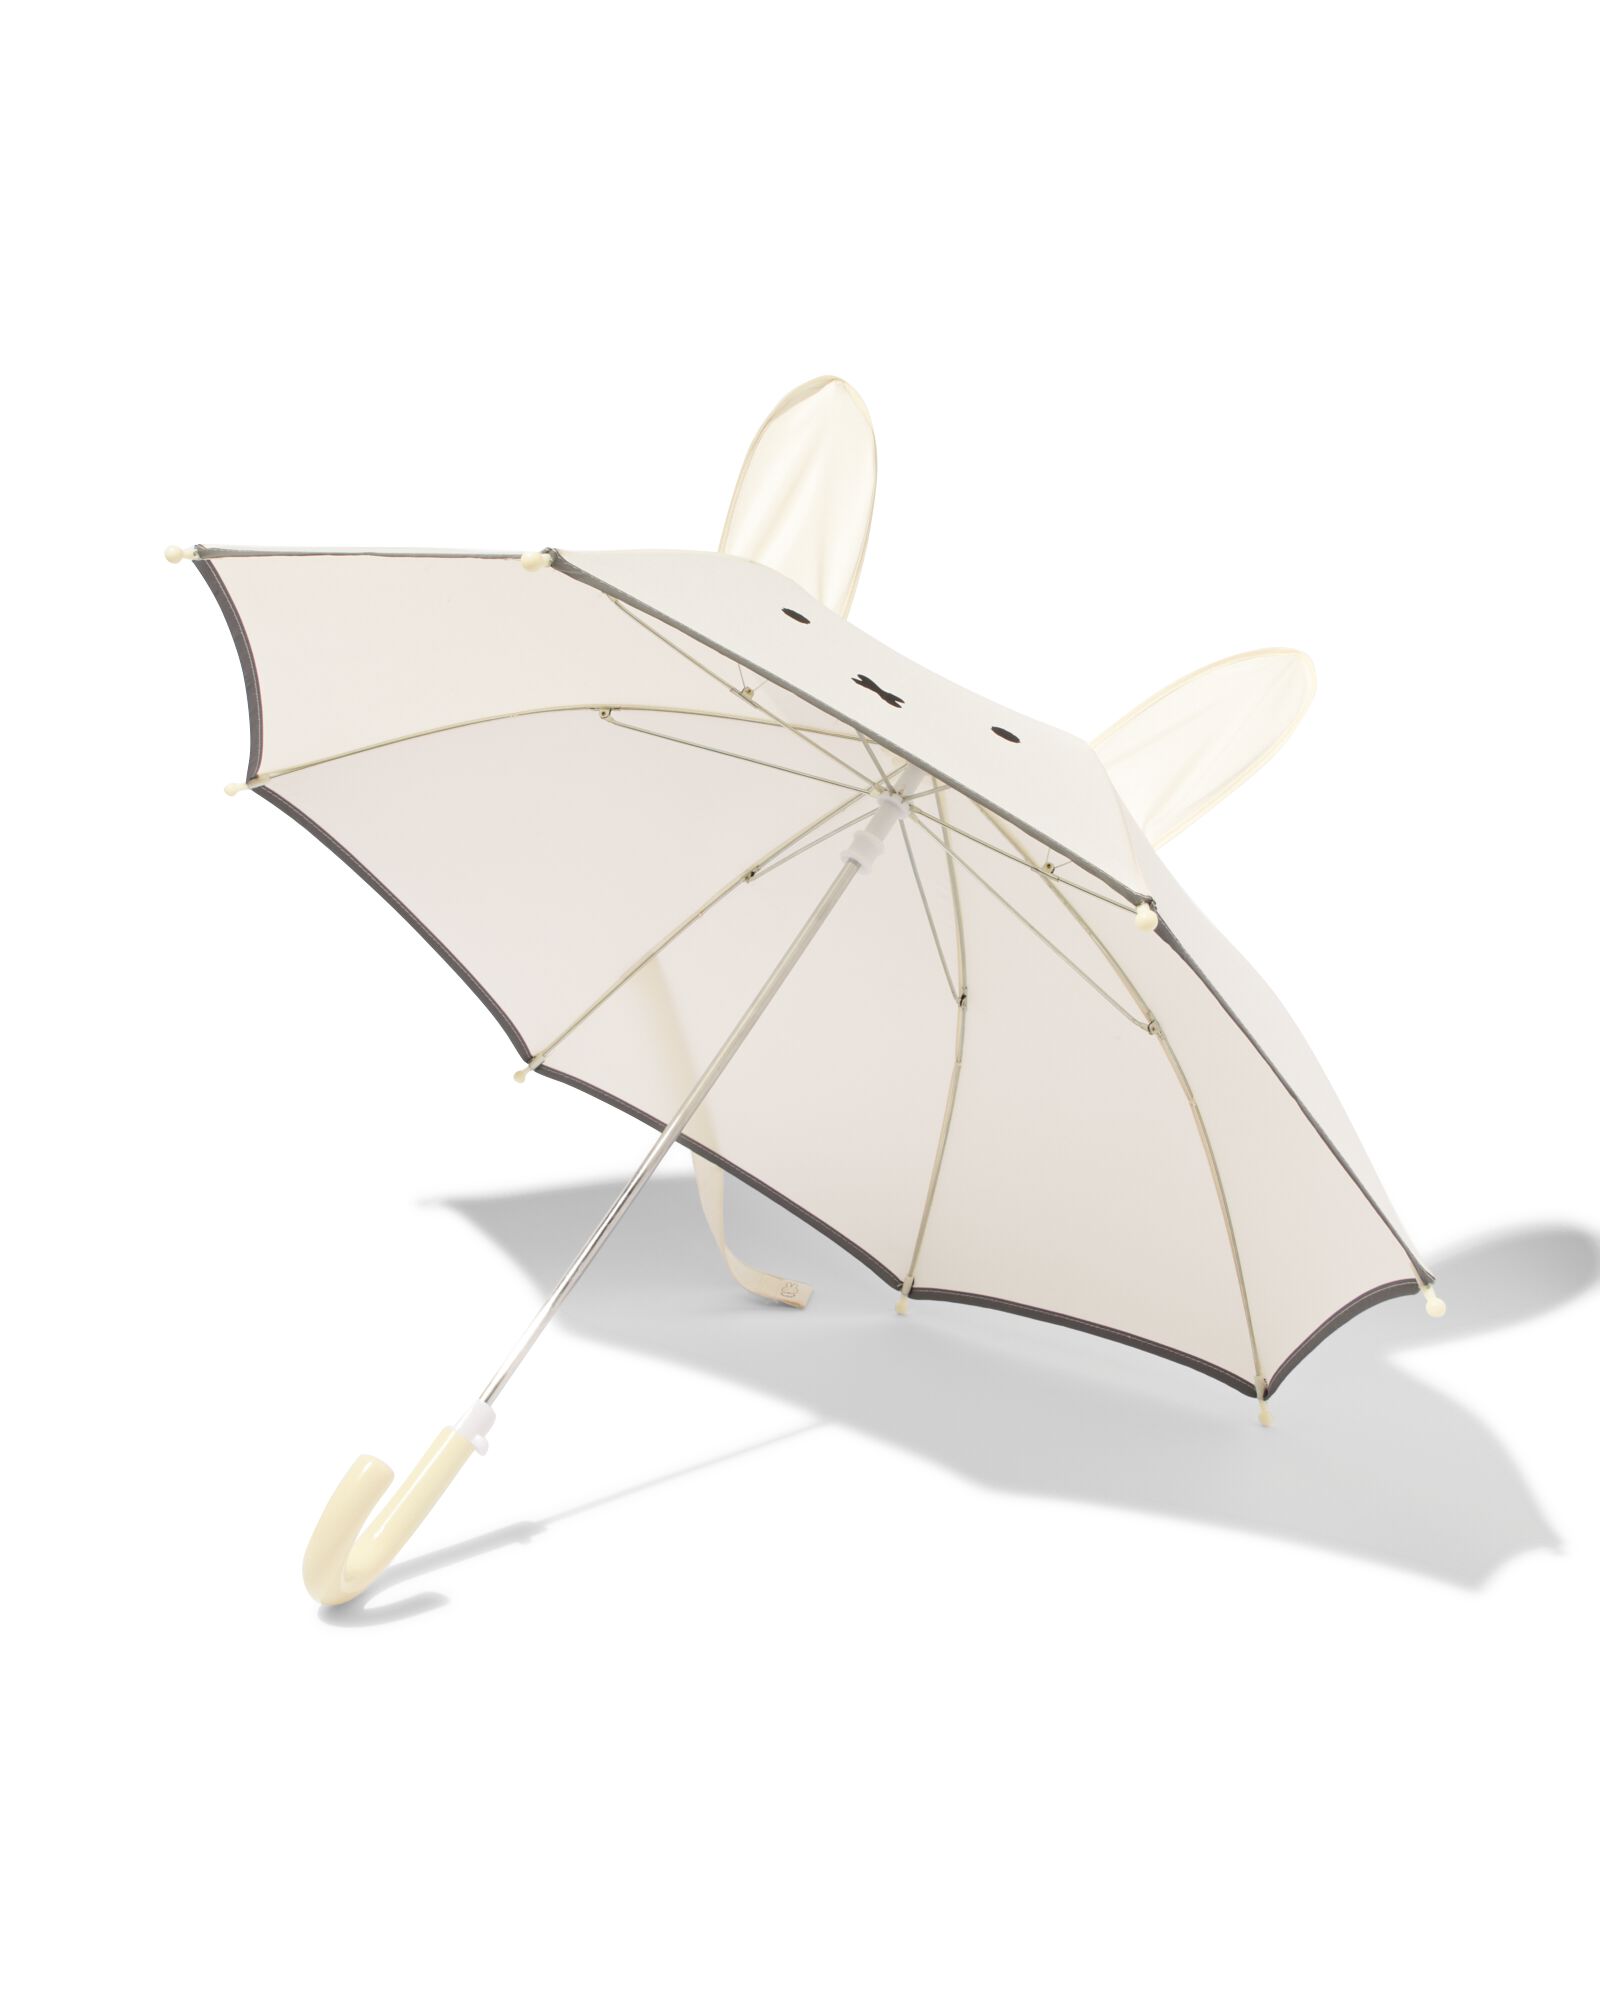 Kinder-Regenschirm, Miffy, mit Ohren - 16830022 - HEMA